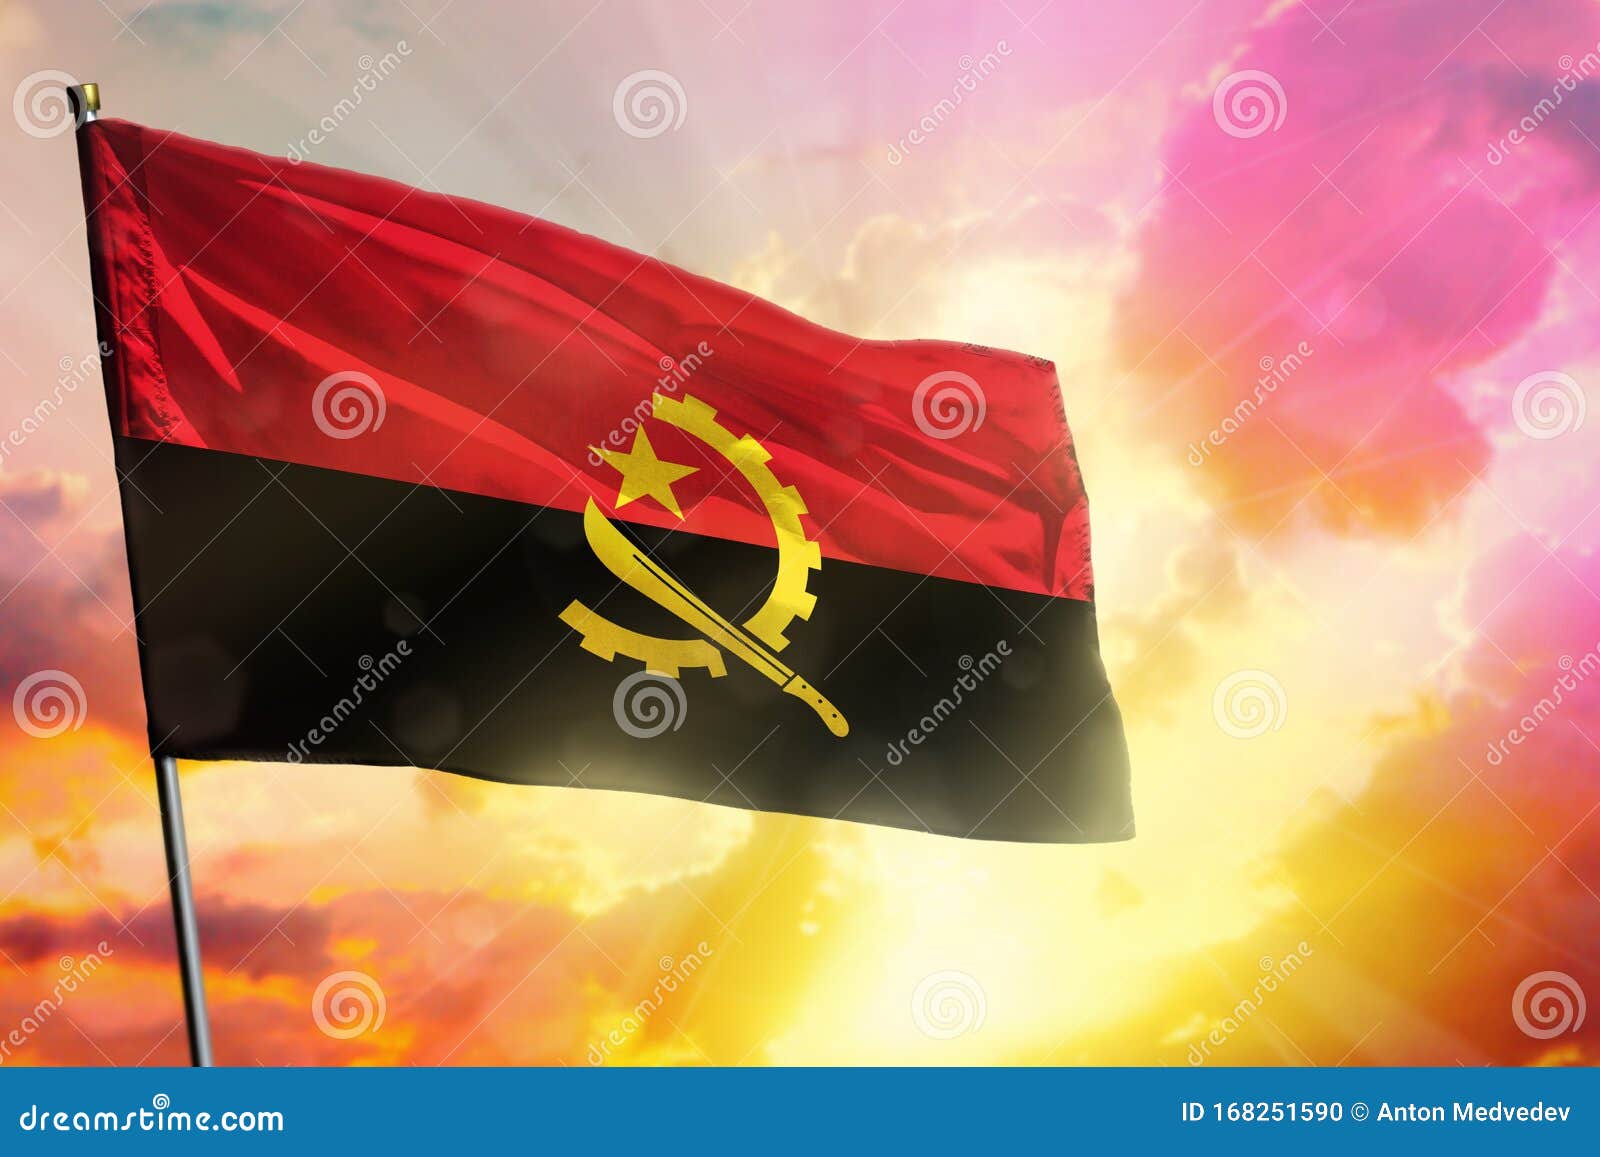 Brasil Angola Signo Bandeiras Conceito fotos, imagens de © eabff #55544583